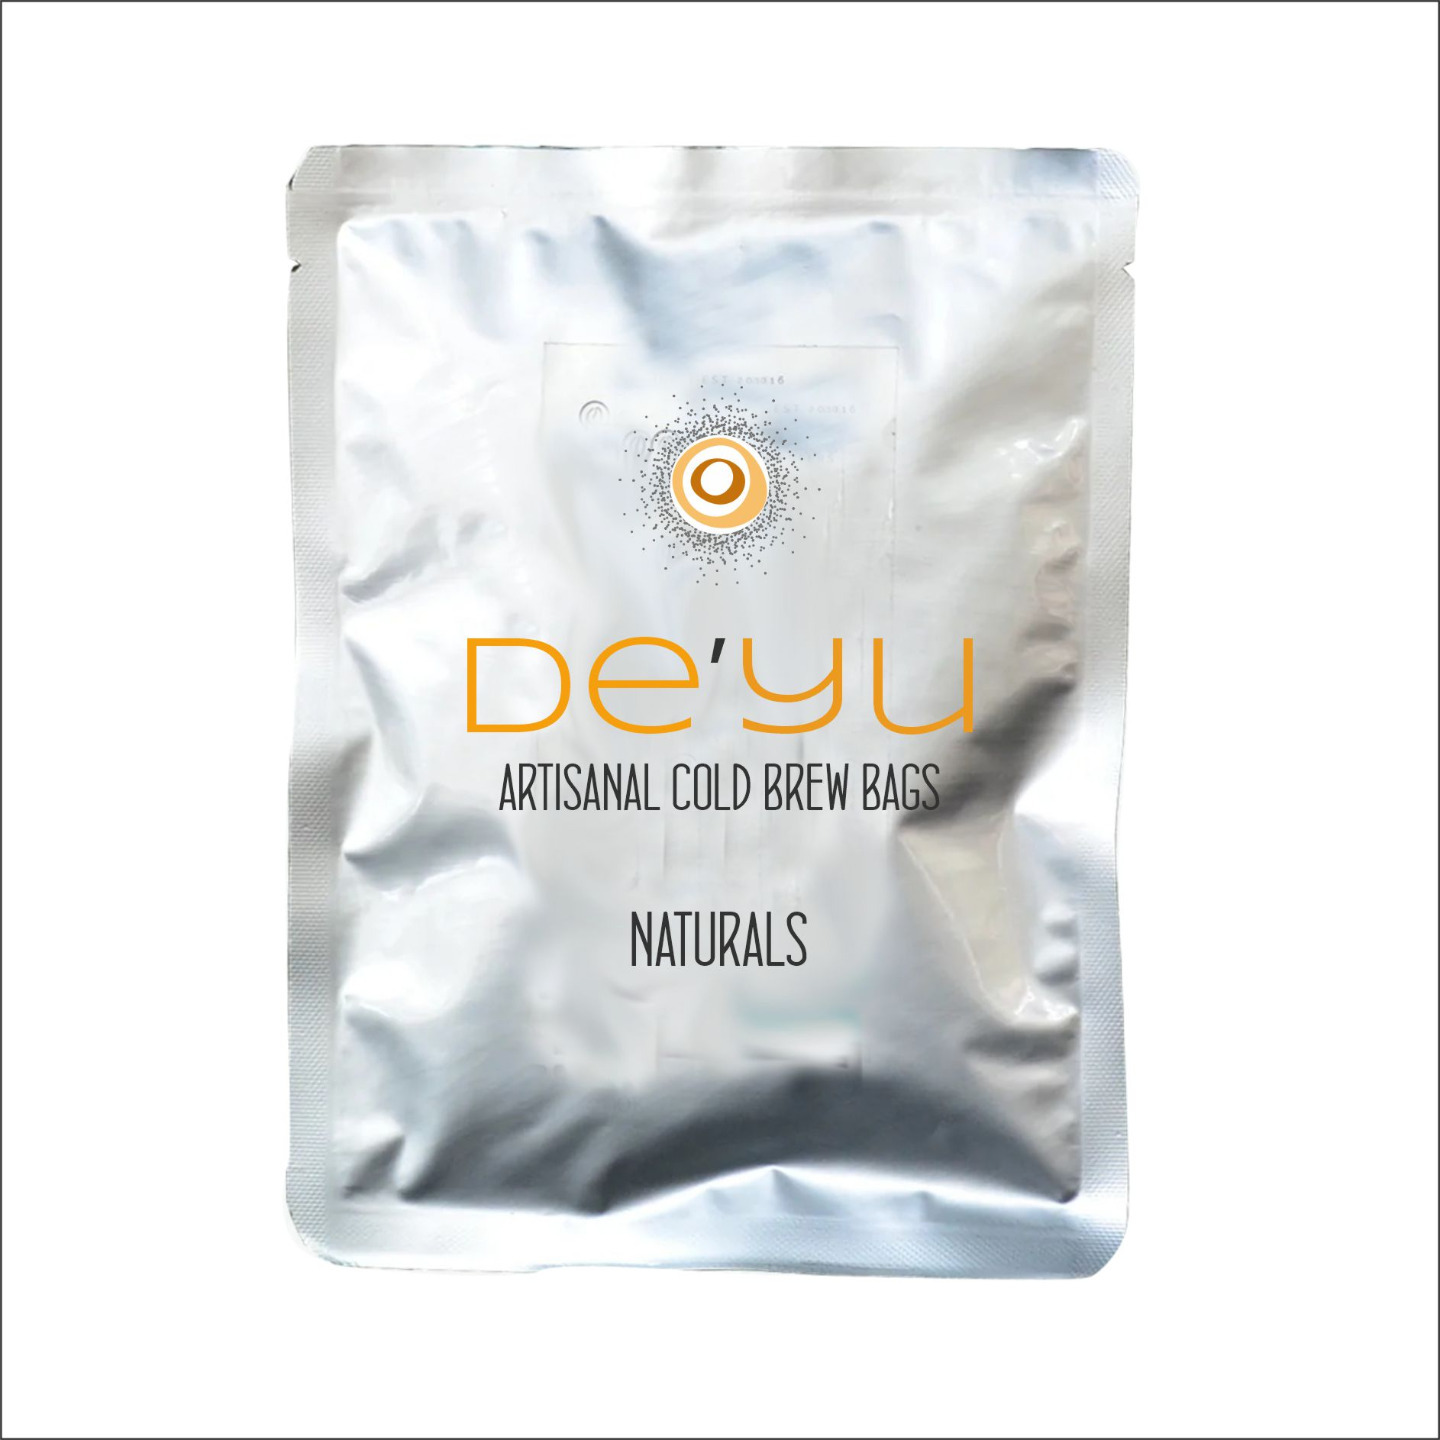 DEYU - Artisnal cold brew bags - Naturals